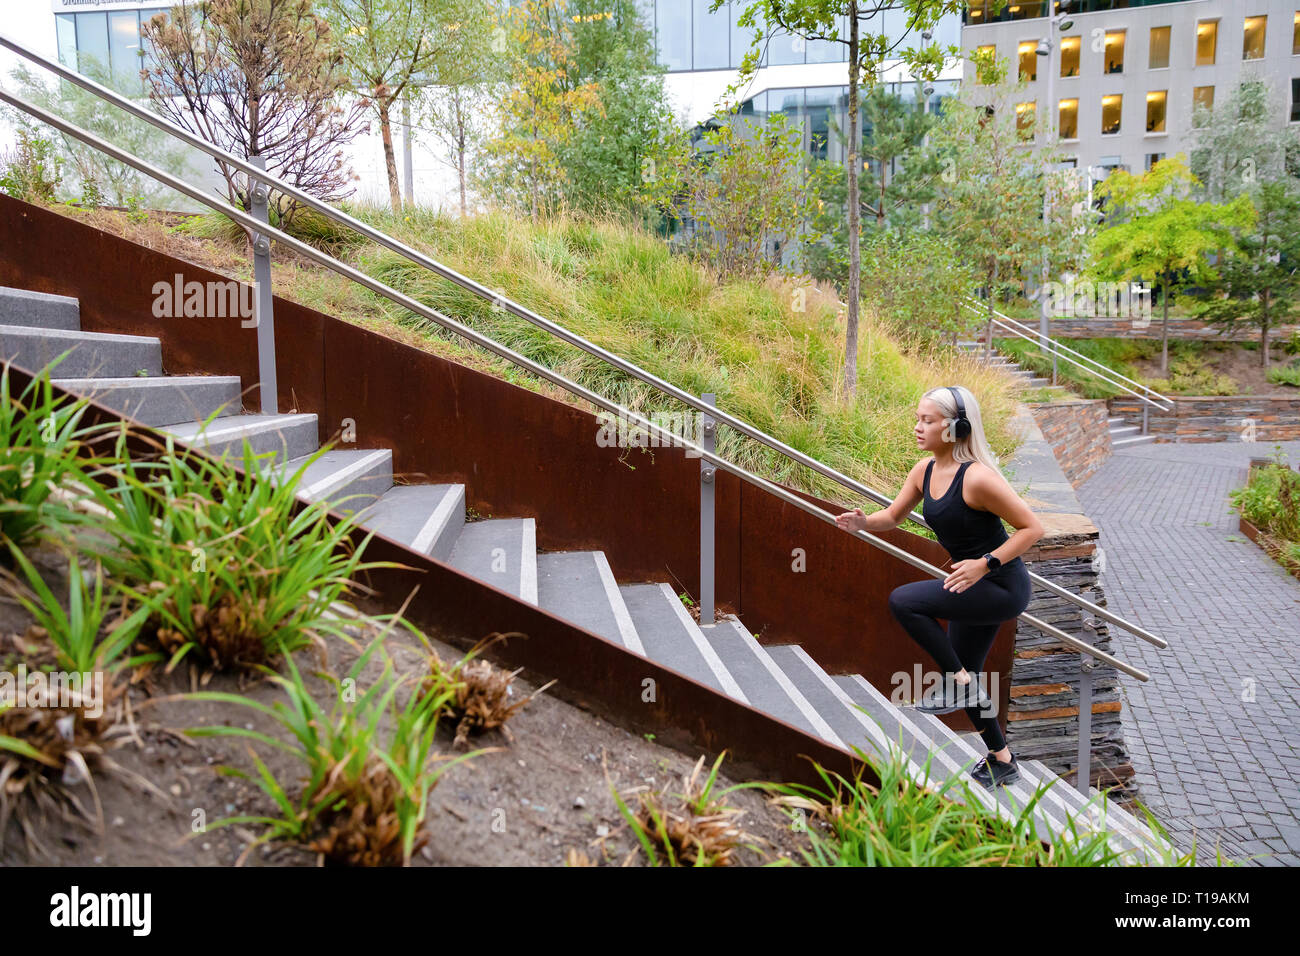 Montare le donne sportive esecuzione di allenamento a intervalli in scale nel parco della città Foto Stock